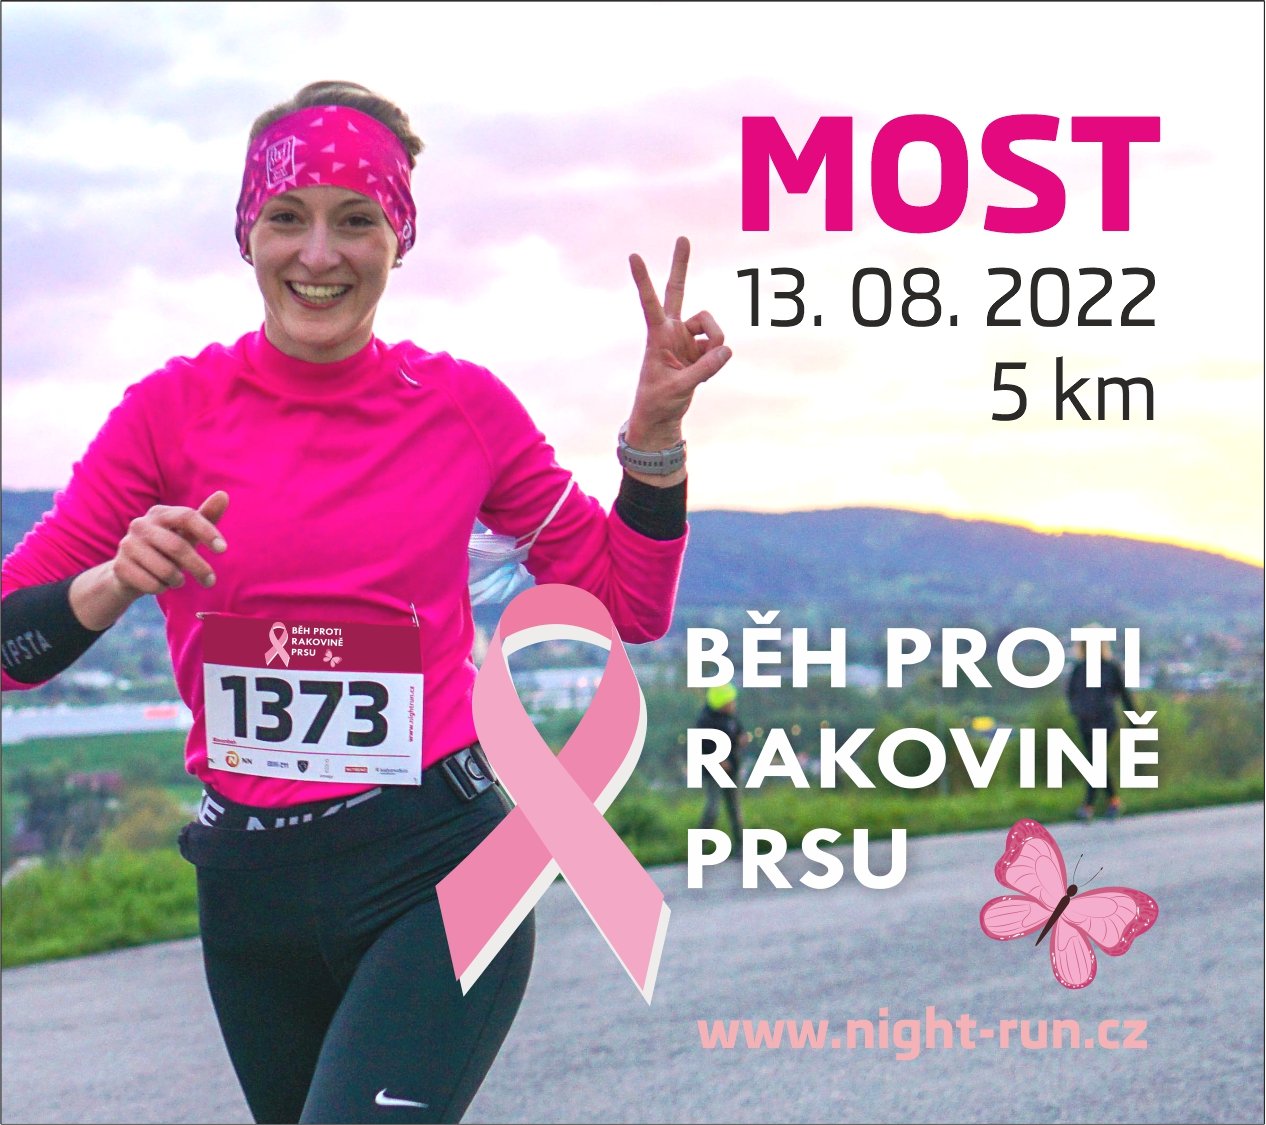 Charitativní běh proti rakovině prsu – Night run v Mostě